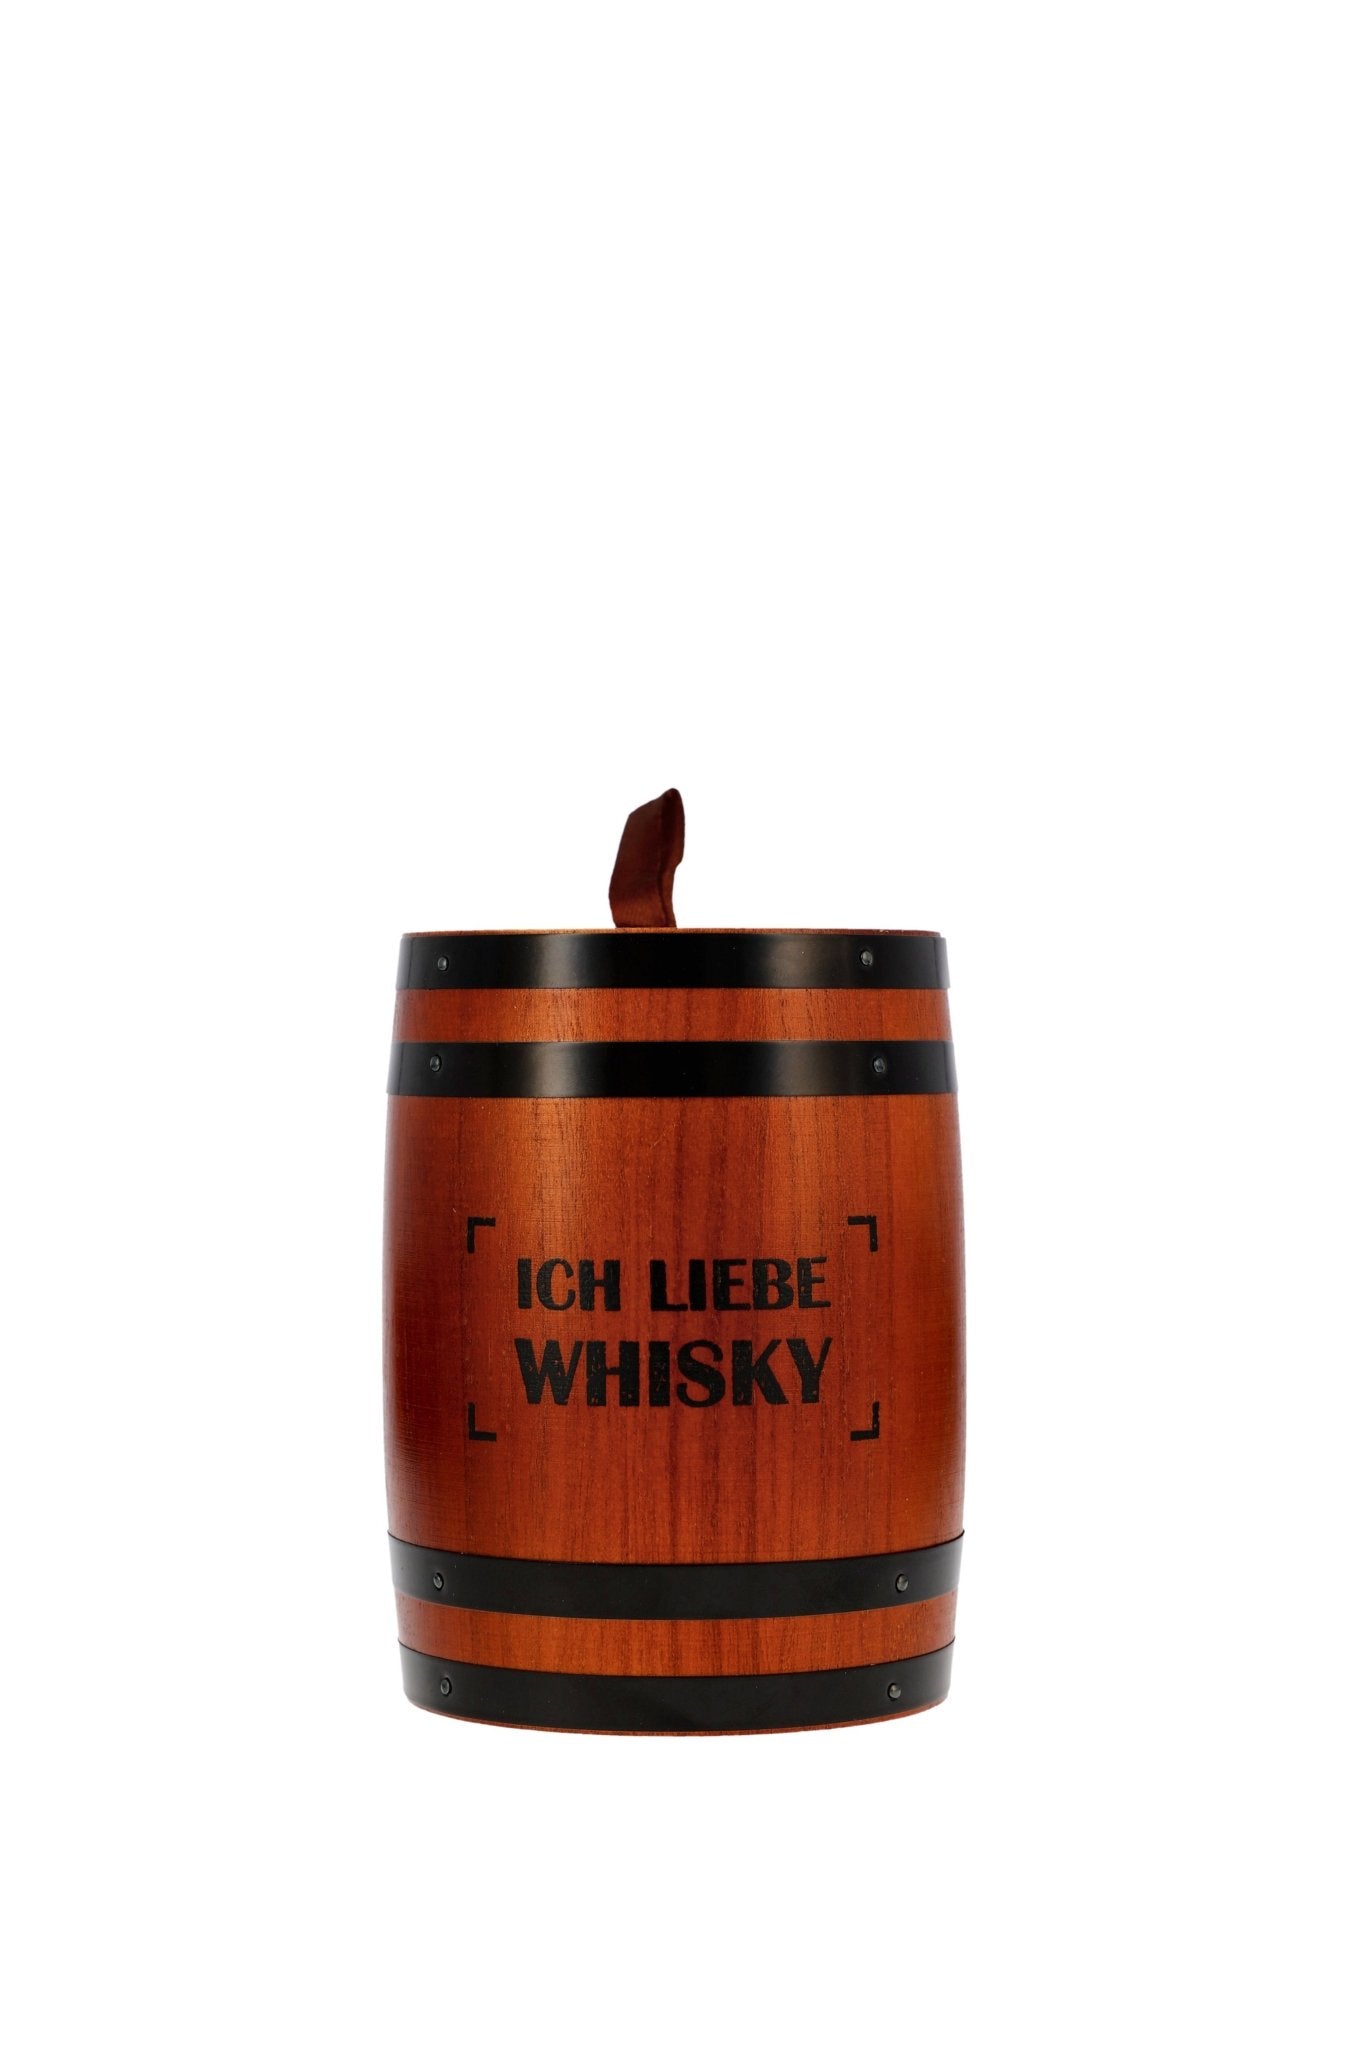 Scotch Whisky Tasting Fass "Ich liebe Whisky" Kirsch Import Taste24 7x20ml - Maltimore